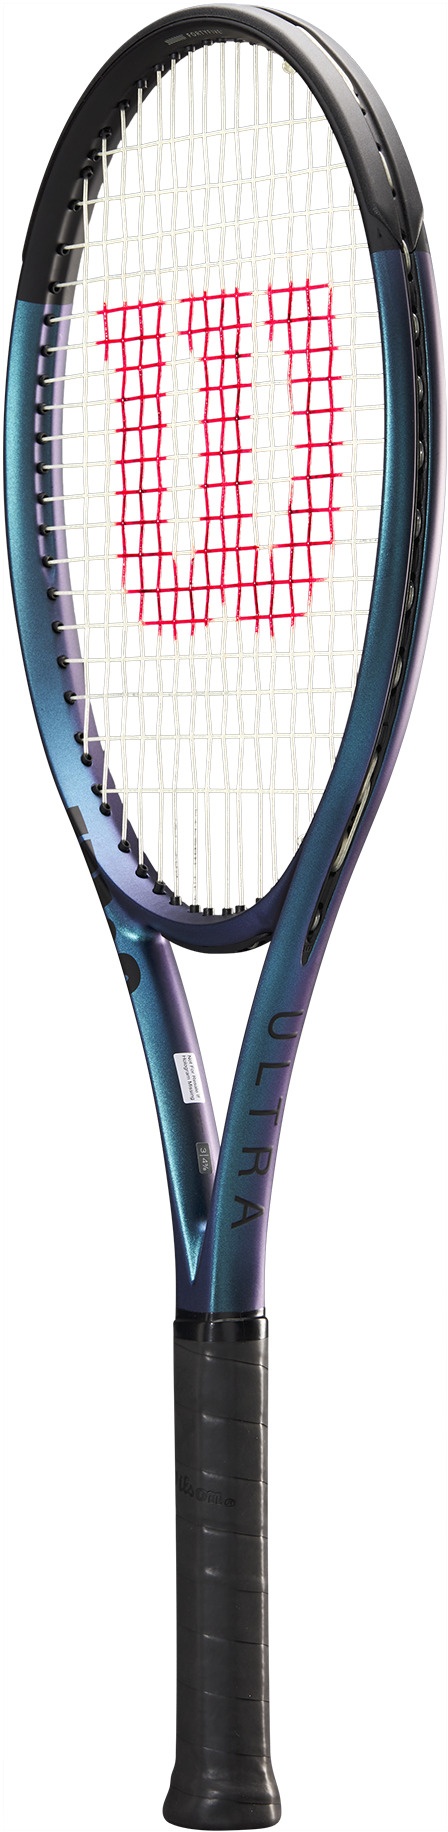 Výkonnostná tenisová raketa